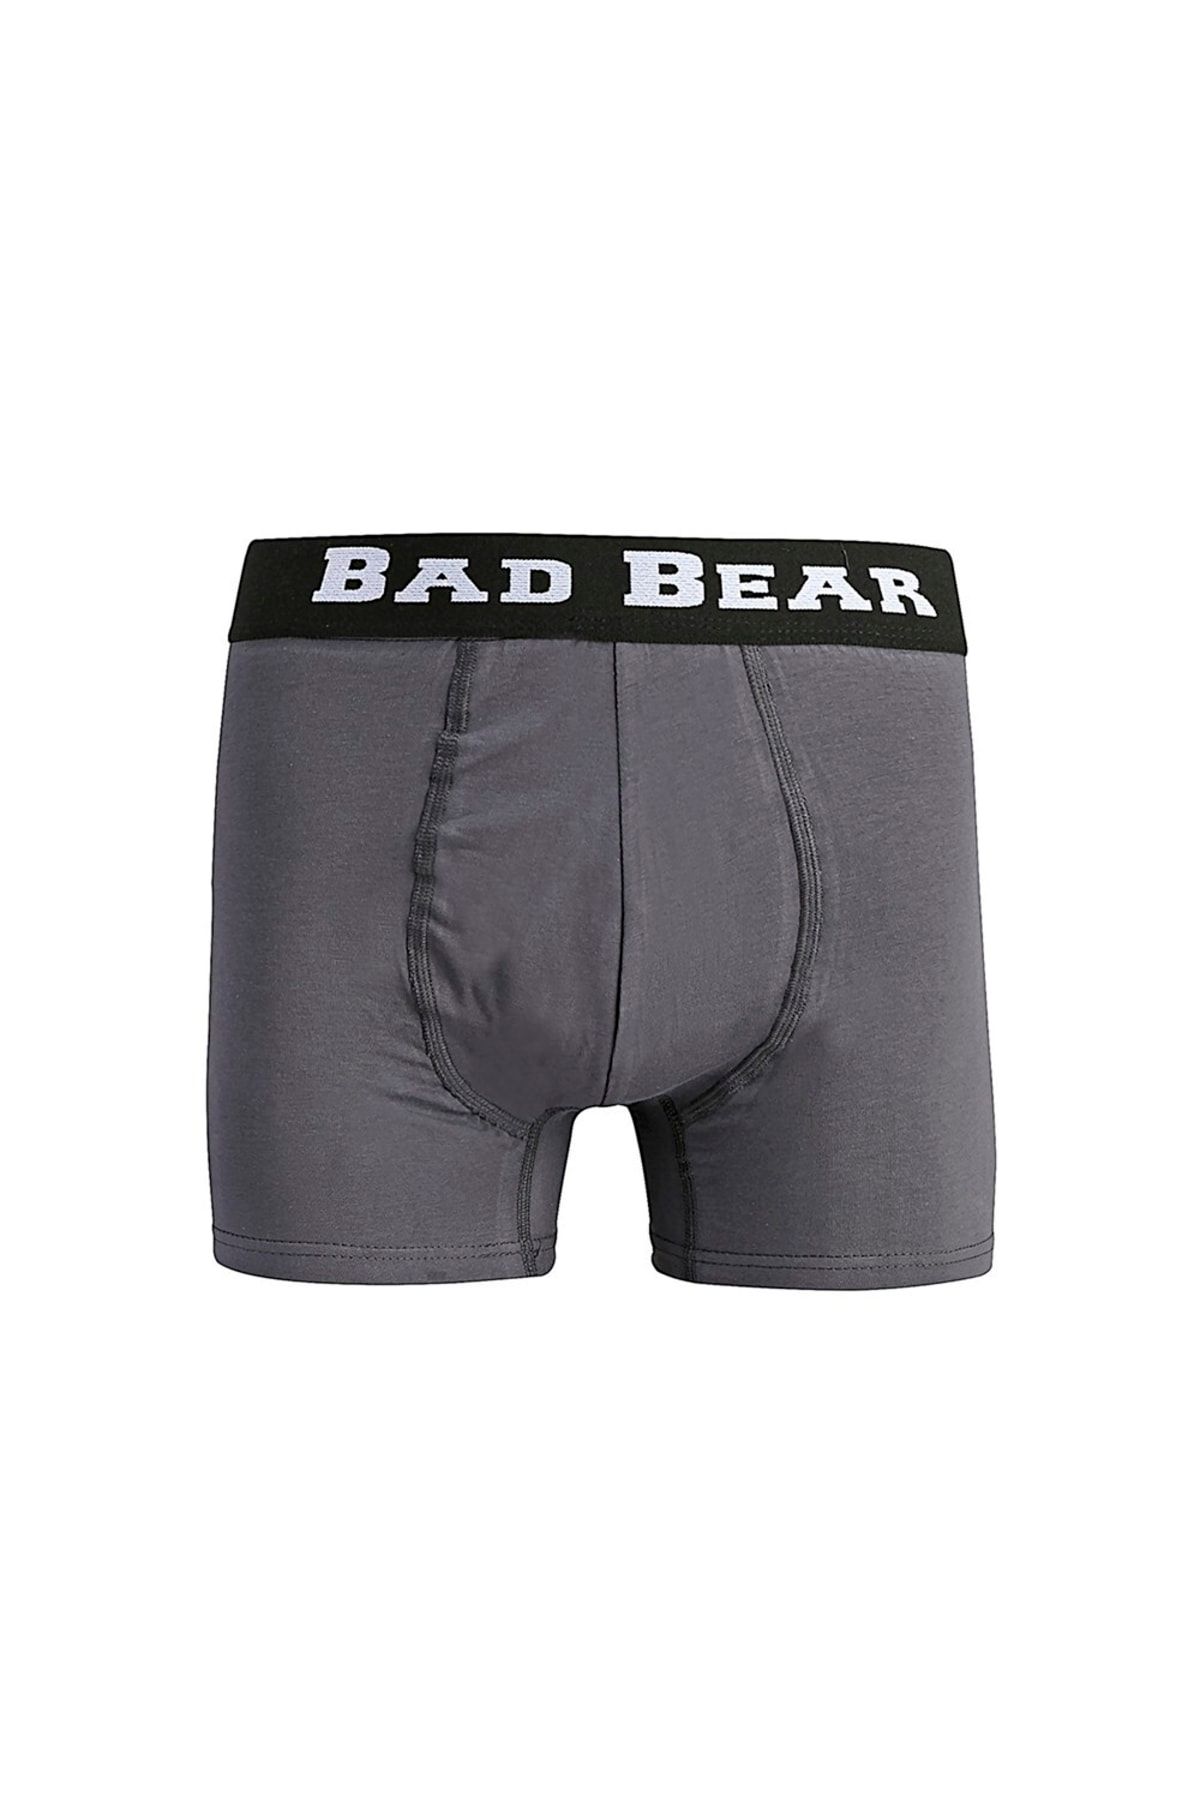 Bad Bear Erkek Boxer Basic